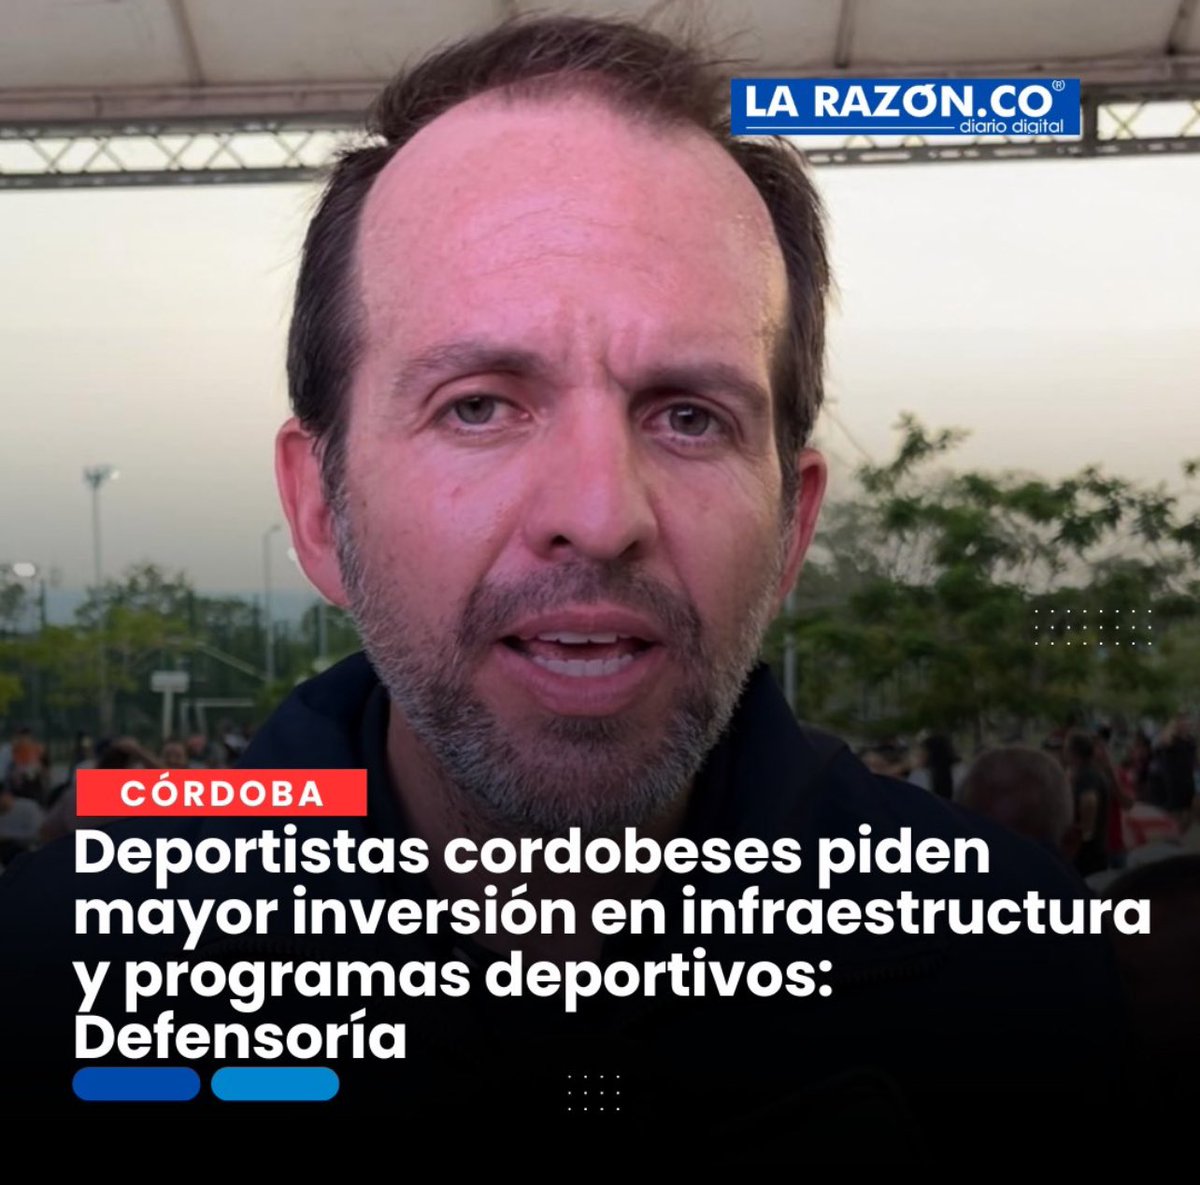 Deportistas cordobeses piden mayor inversión en infraestructura y programas deportivos: Defensoría larazon.co/cordoba/deport… vía @LaRazonCo